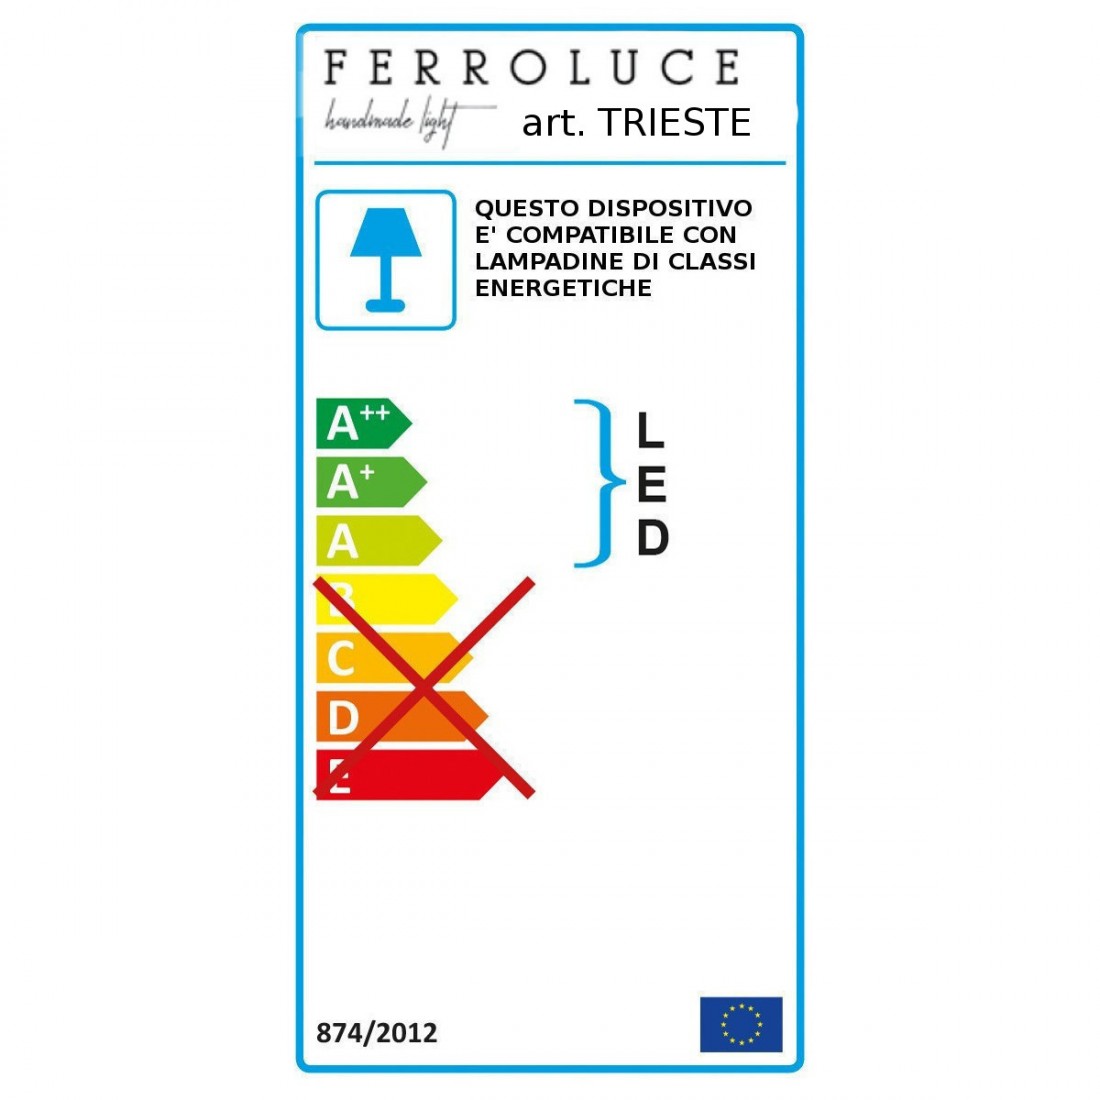 Ferroluce klassische Ferroluce TRIEST C430 E14 LED mit Lüfter